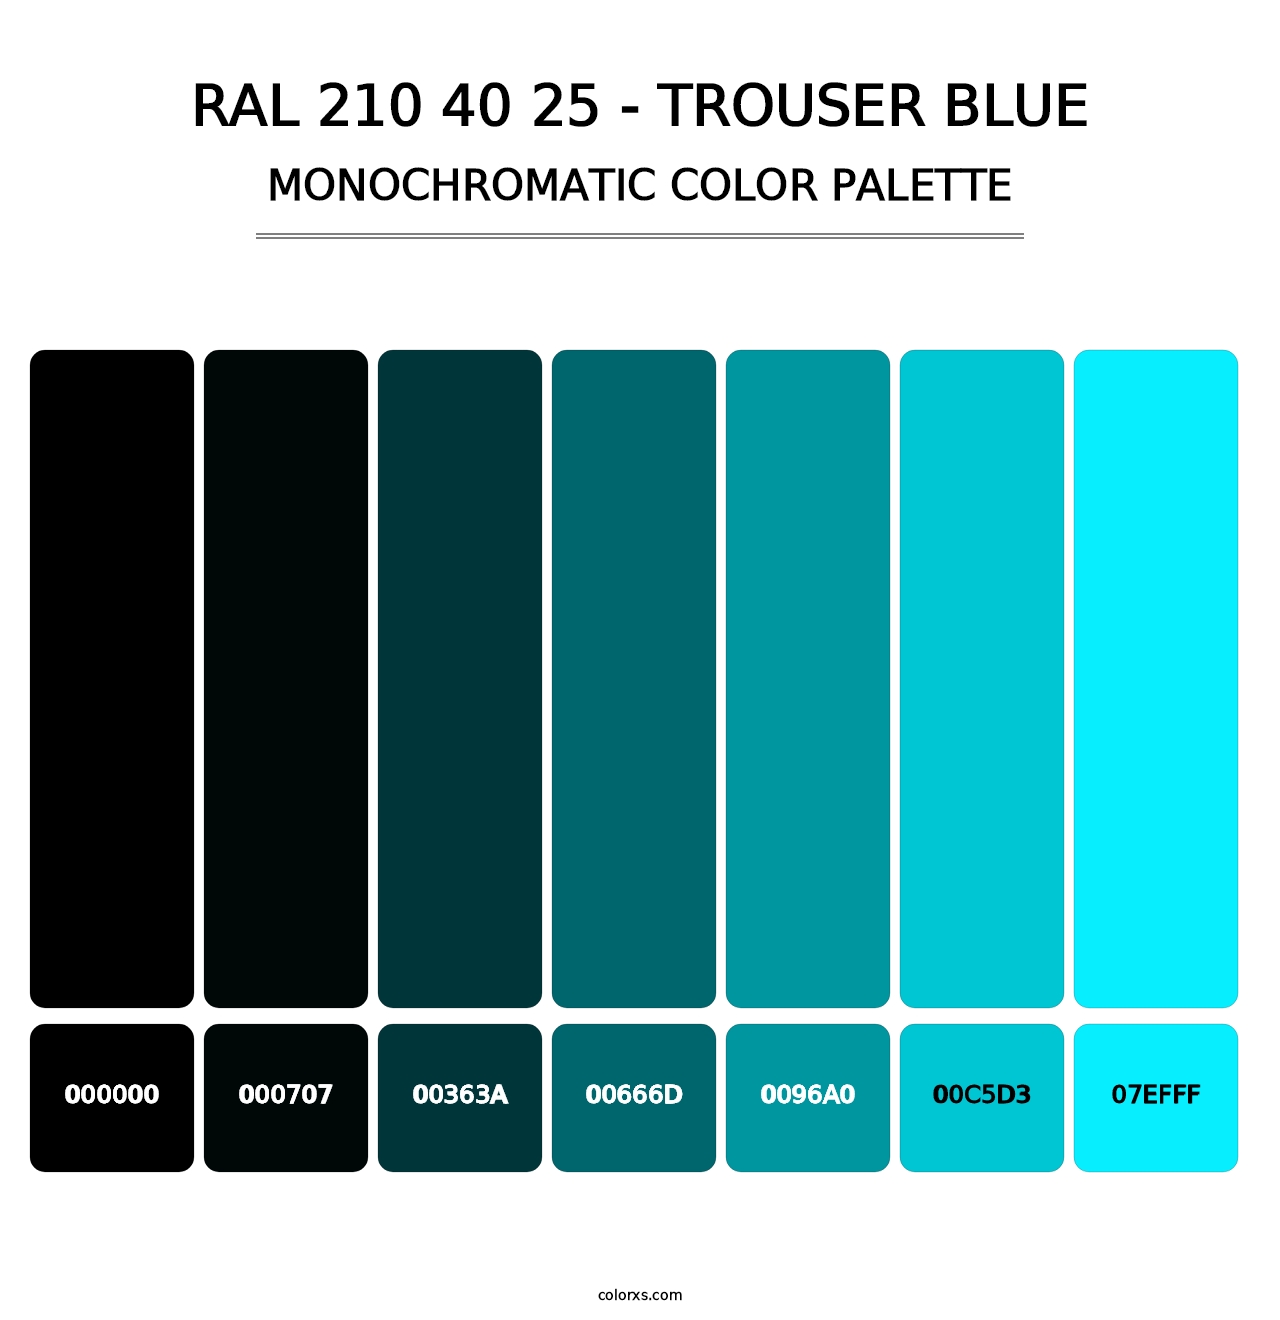 RAL 210 40 25 - Trouser Blue - Monochromatic Color Palette